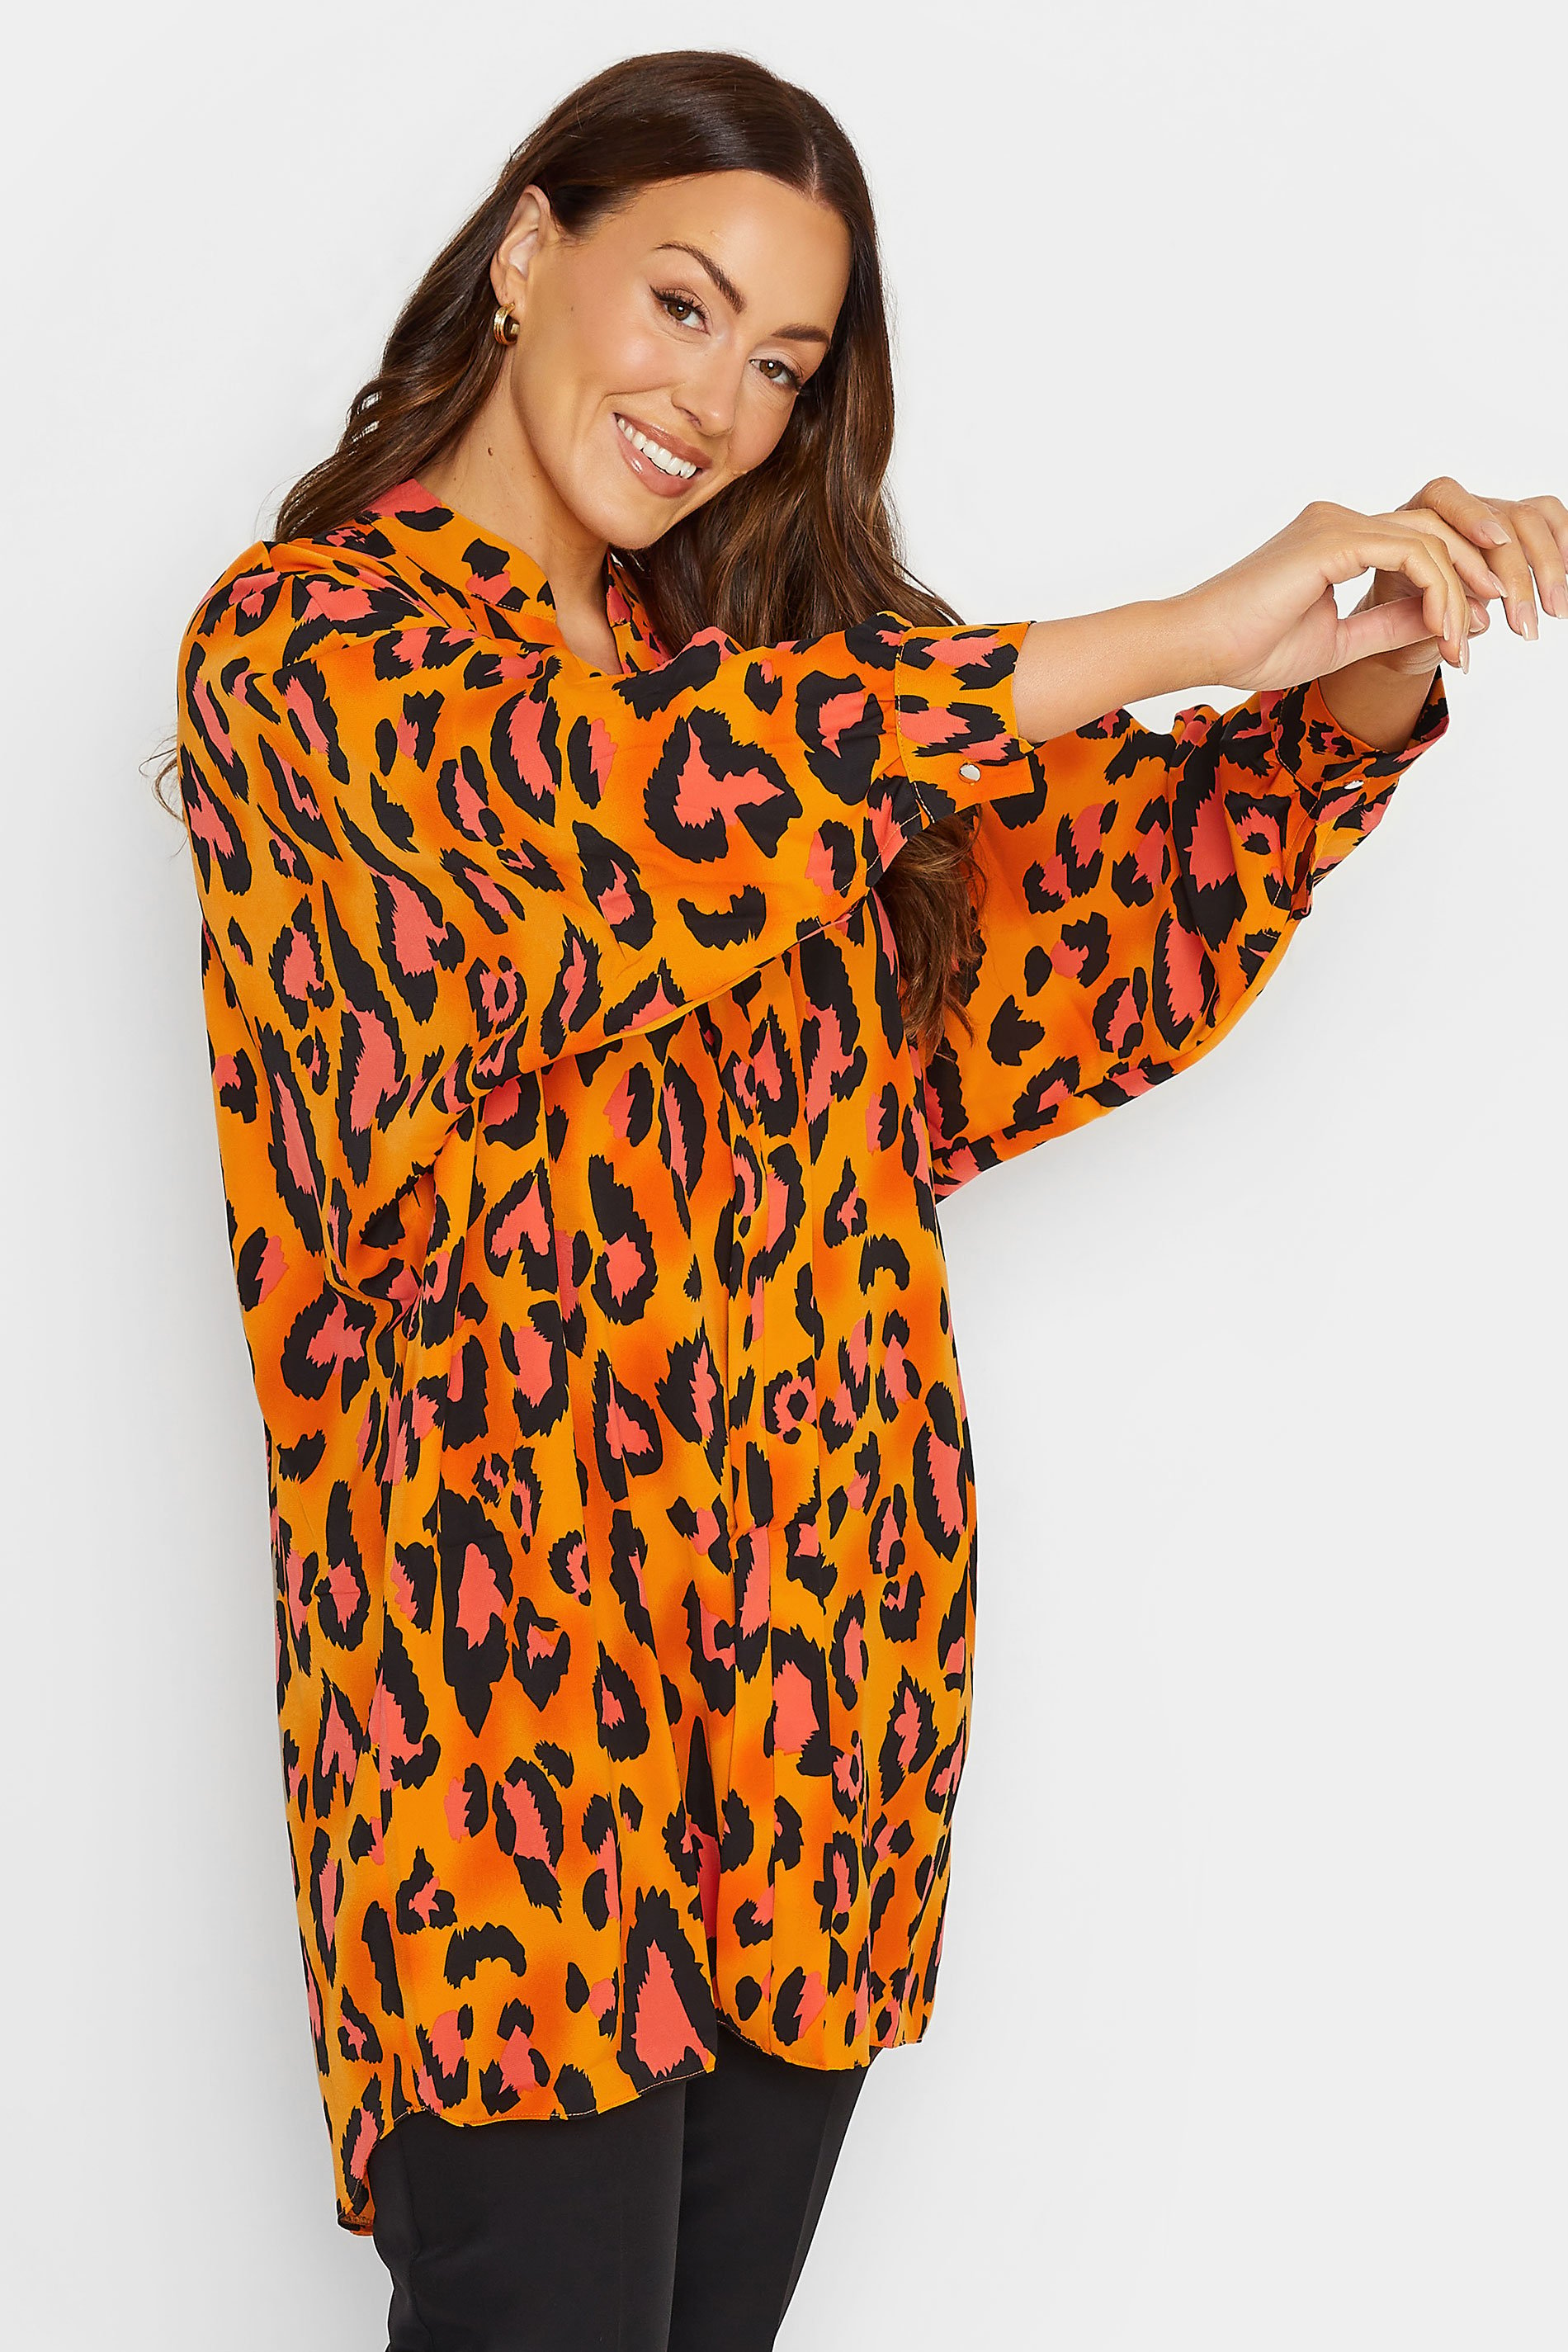 M&Co Orange Leopard Print Blouse | M&Co 1